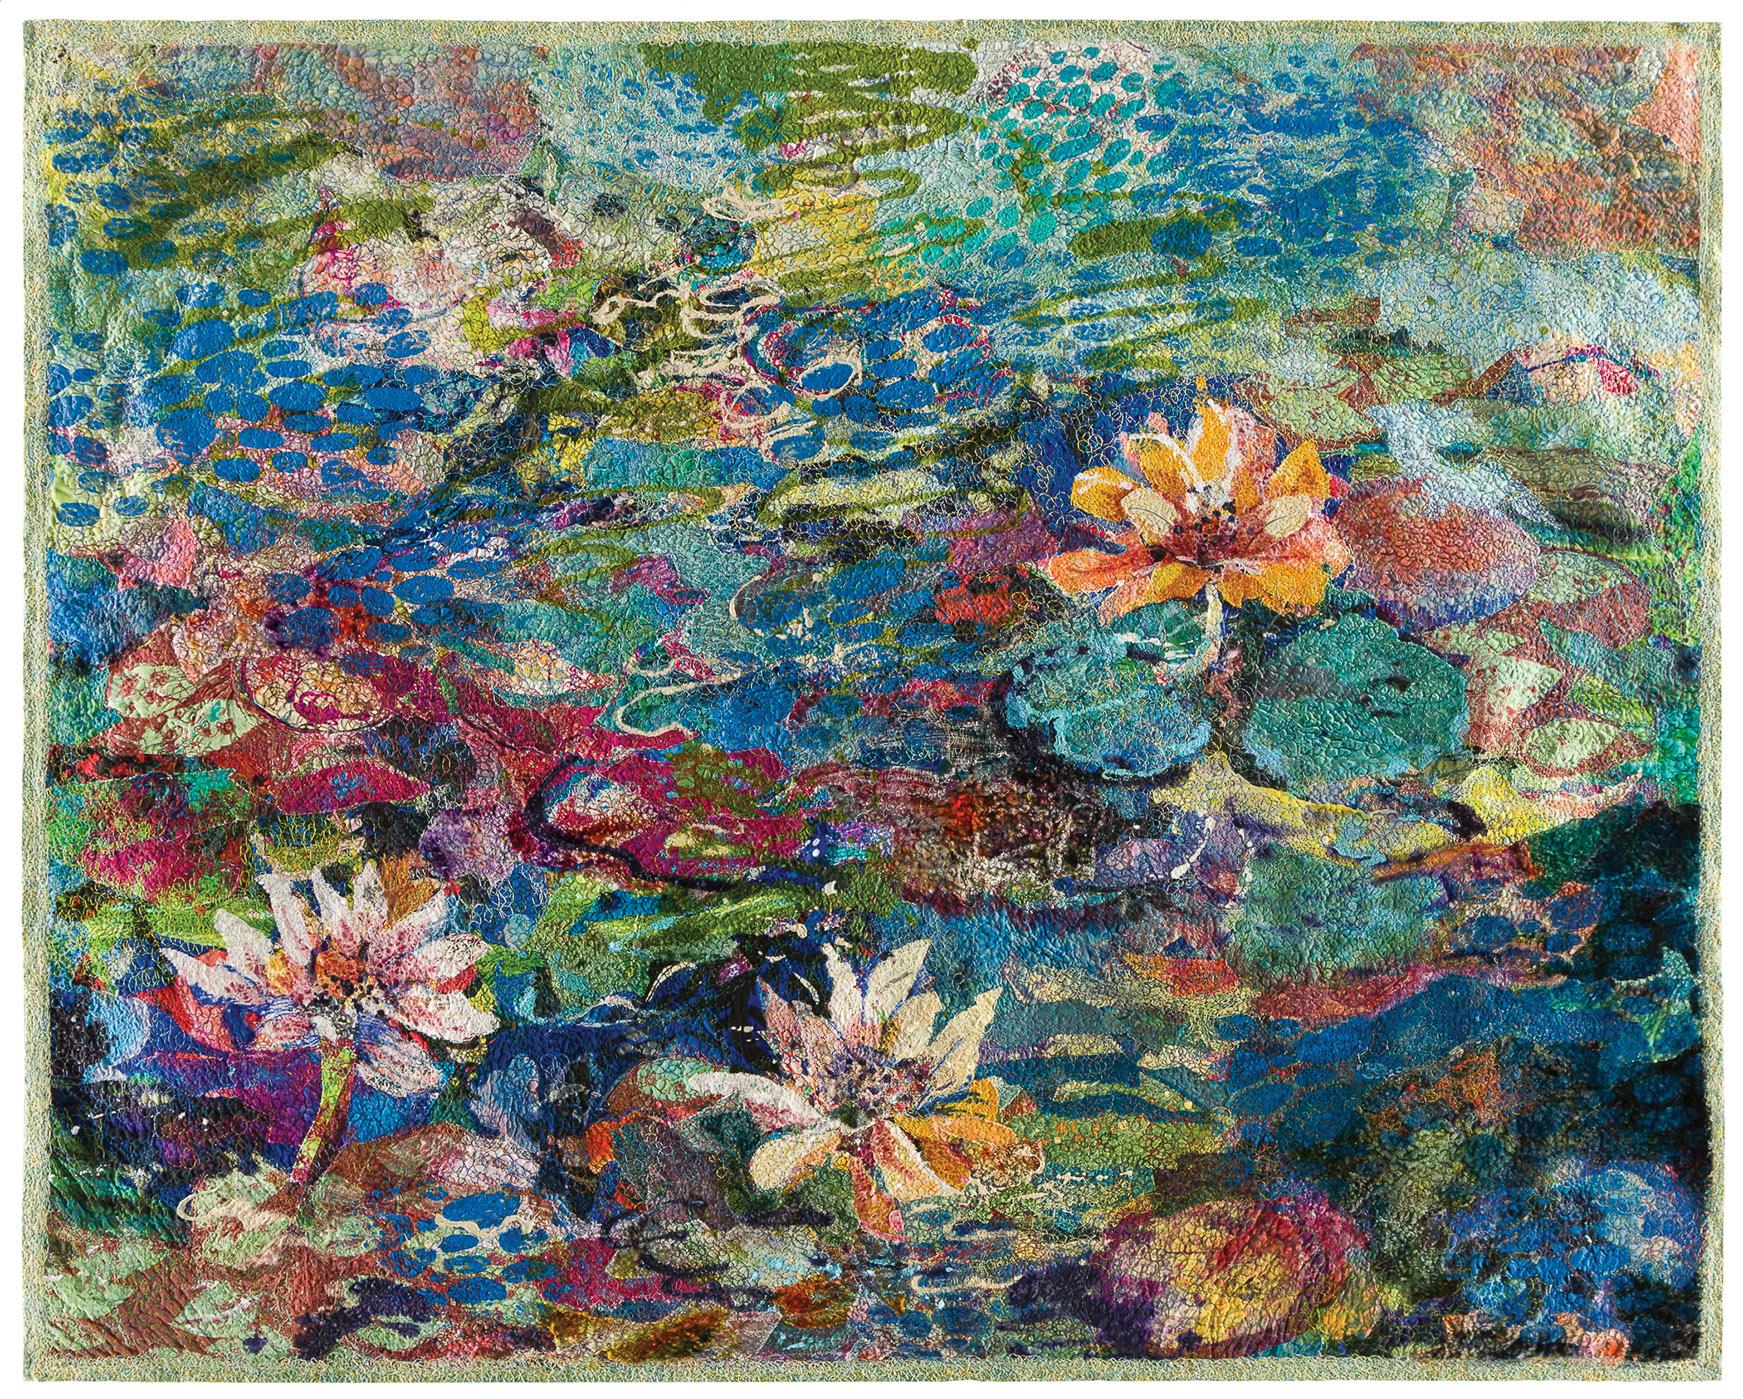 Marianne R. Williamson - Japanese Water Garden